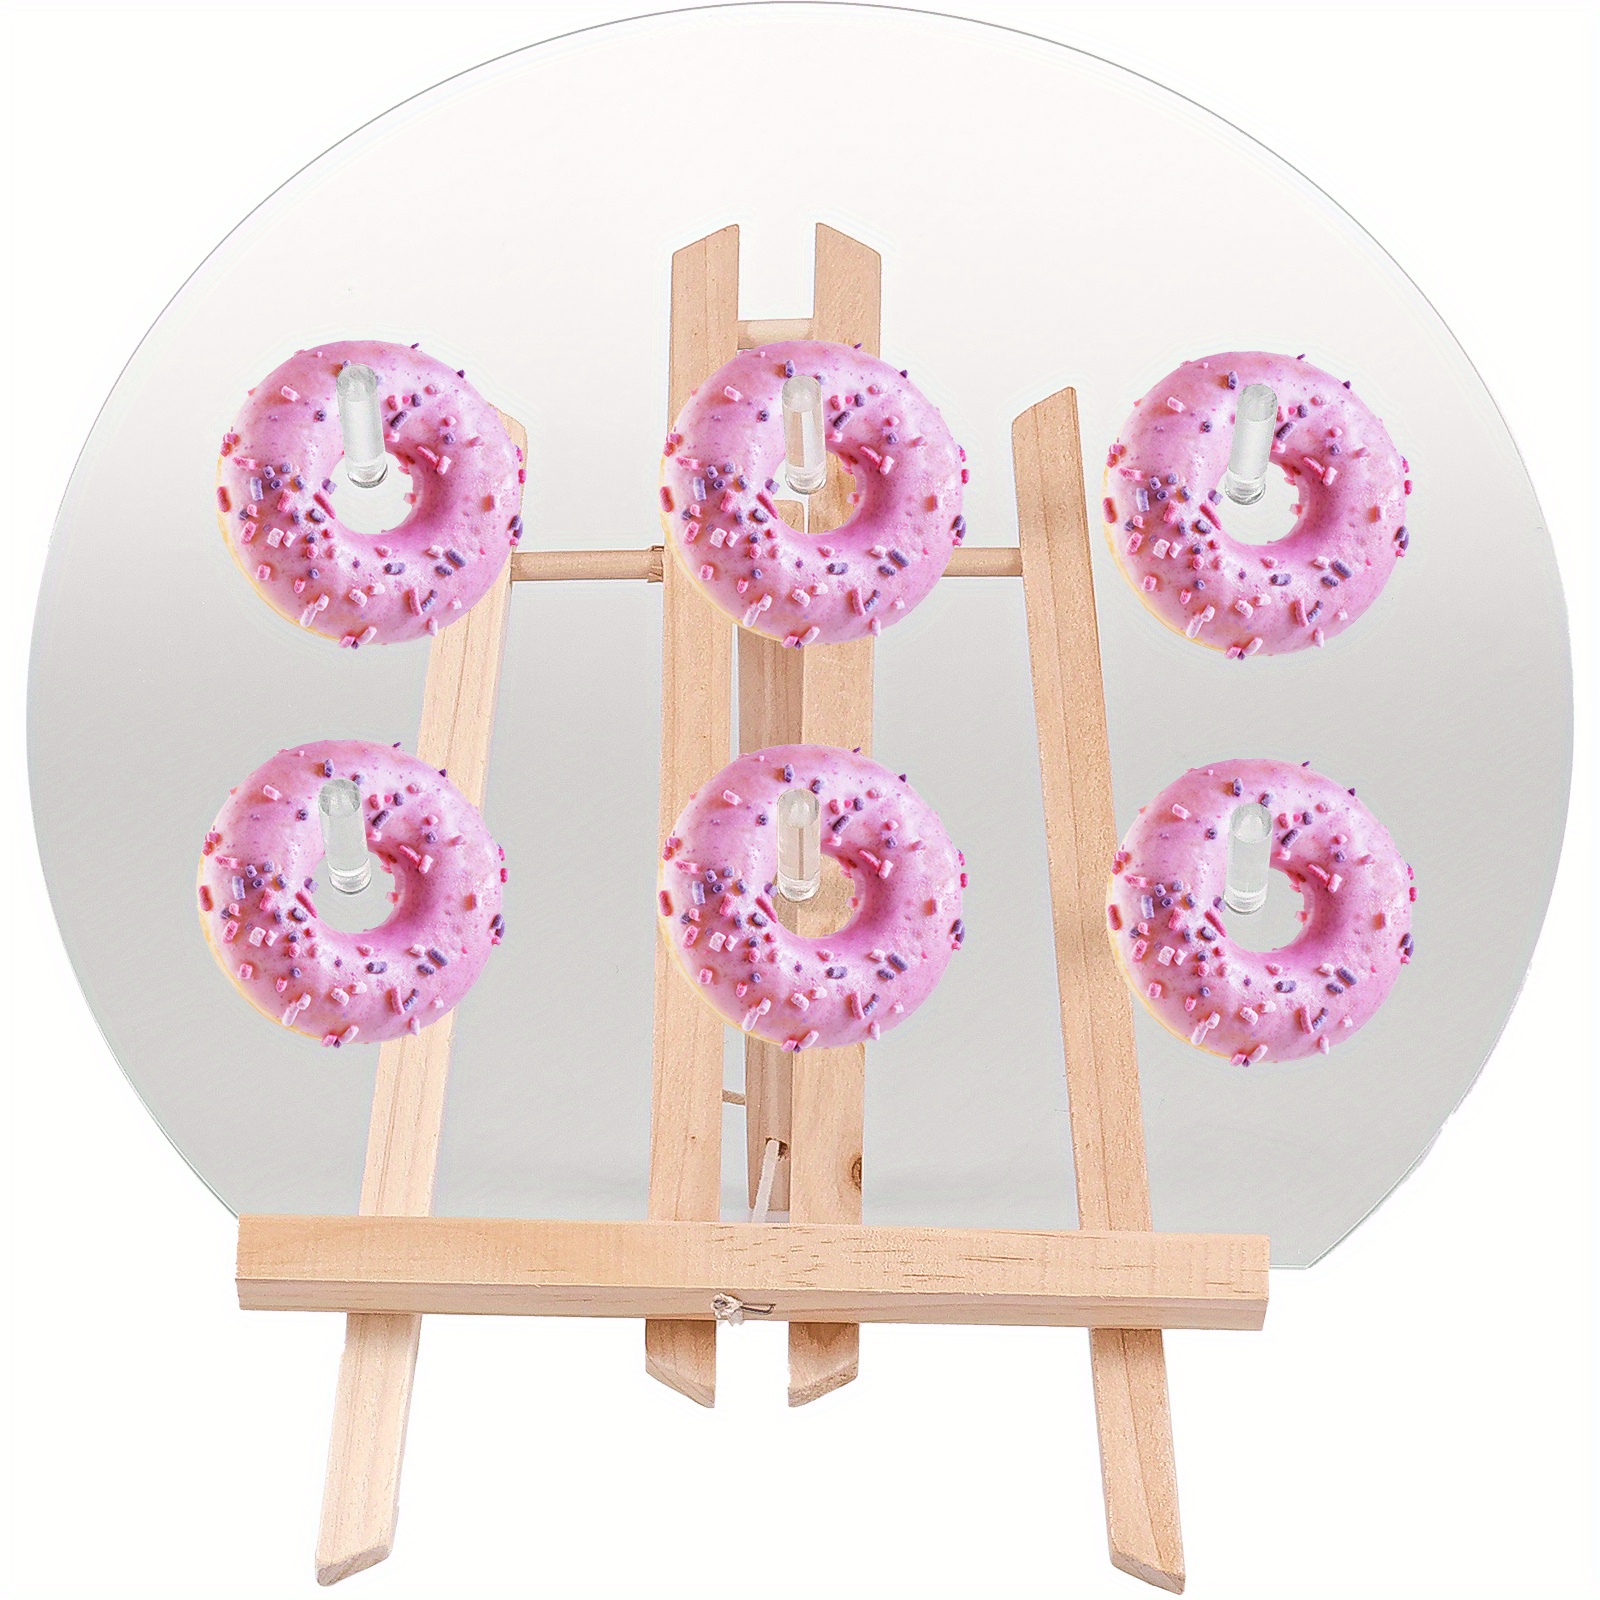 Soporte de pared para donuts para primera : tablero de soporte para donuts  reutilizable para exhibir donuts, decoración para fiestas de crecimien ,  Ovalada 38x31,5cm Ovalada 38x315cm Soledad soporte de exhibición de